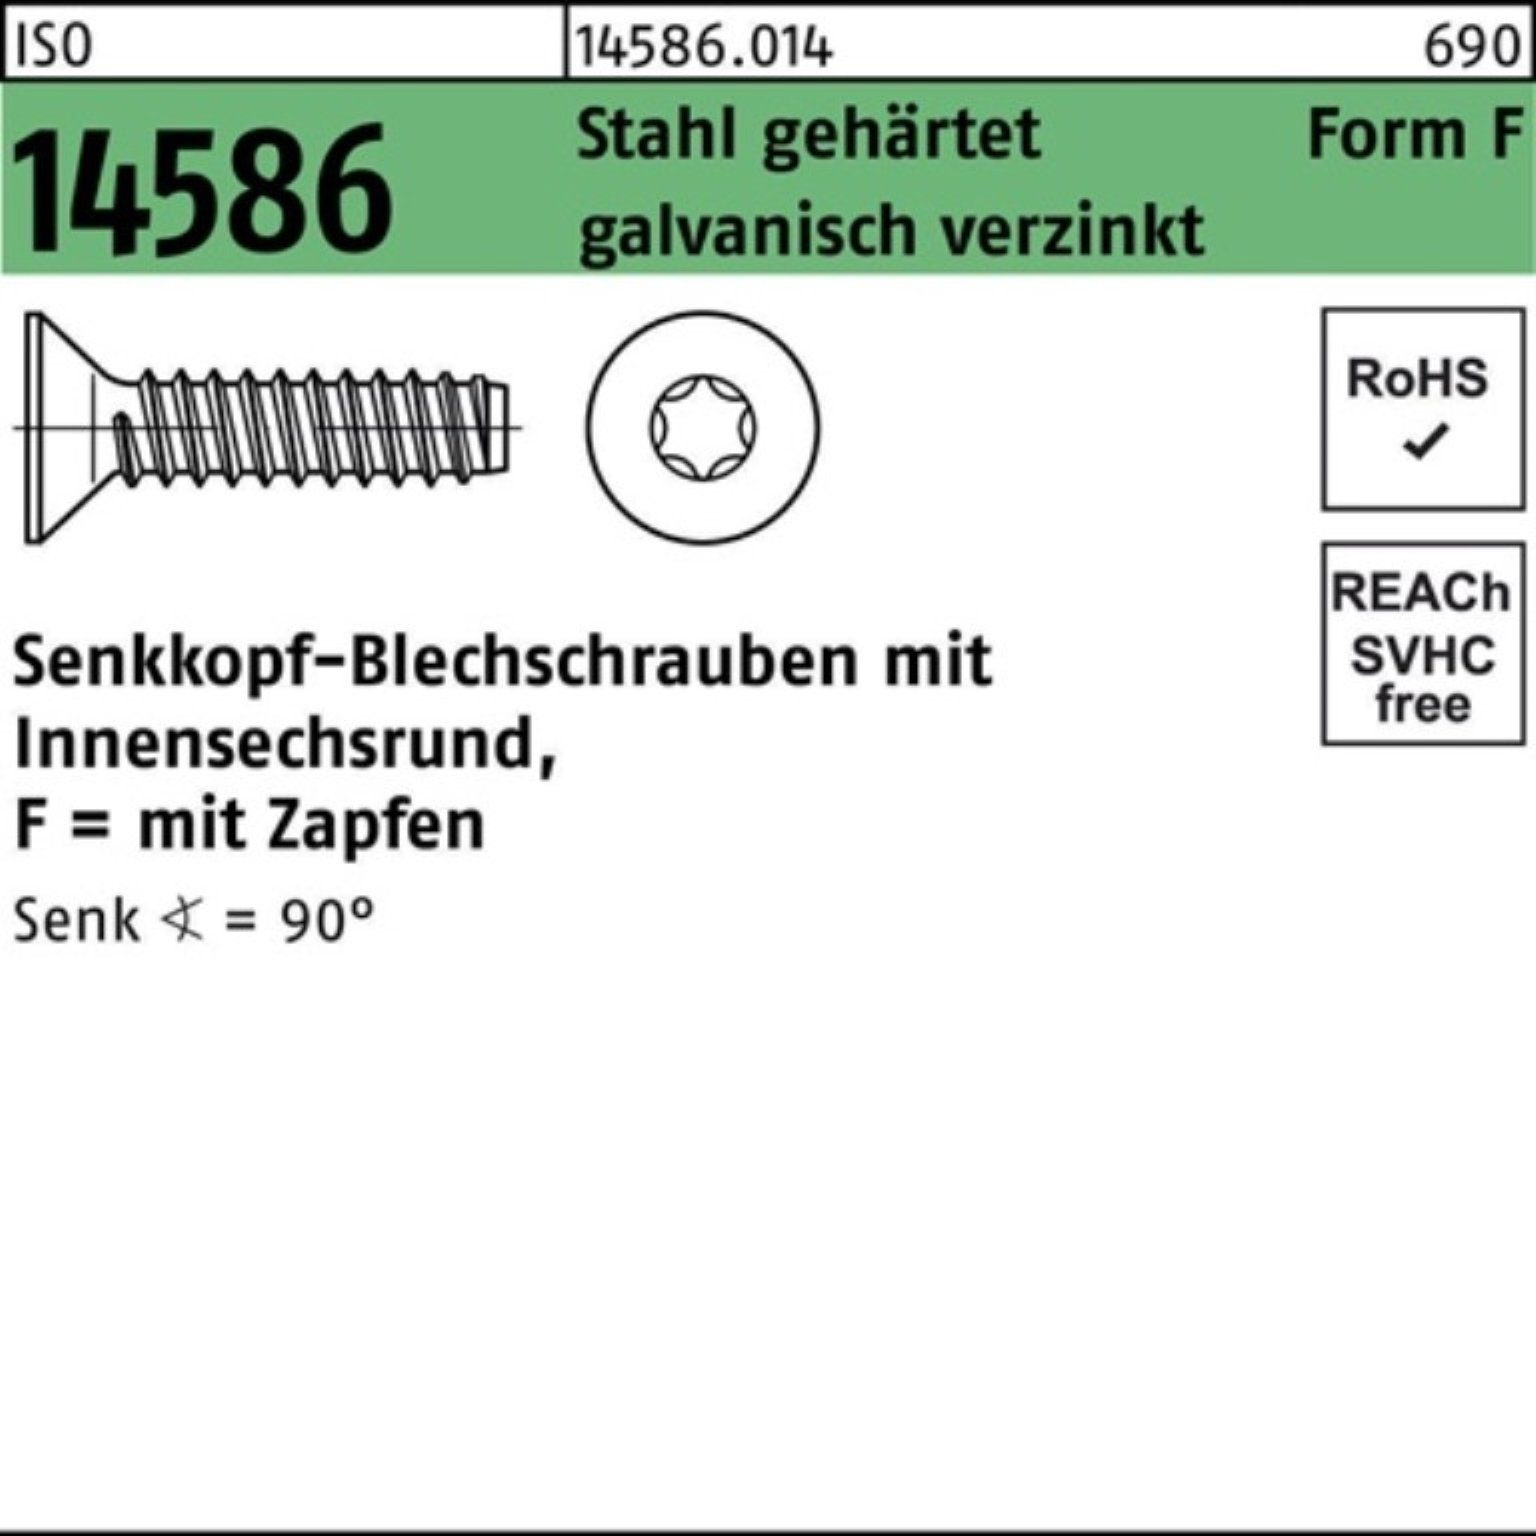 Reyher Schraube 6,3x80 14586 Senkblechschraube ISO -F Pack 100er ISR/Zapfen Stahl geh